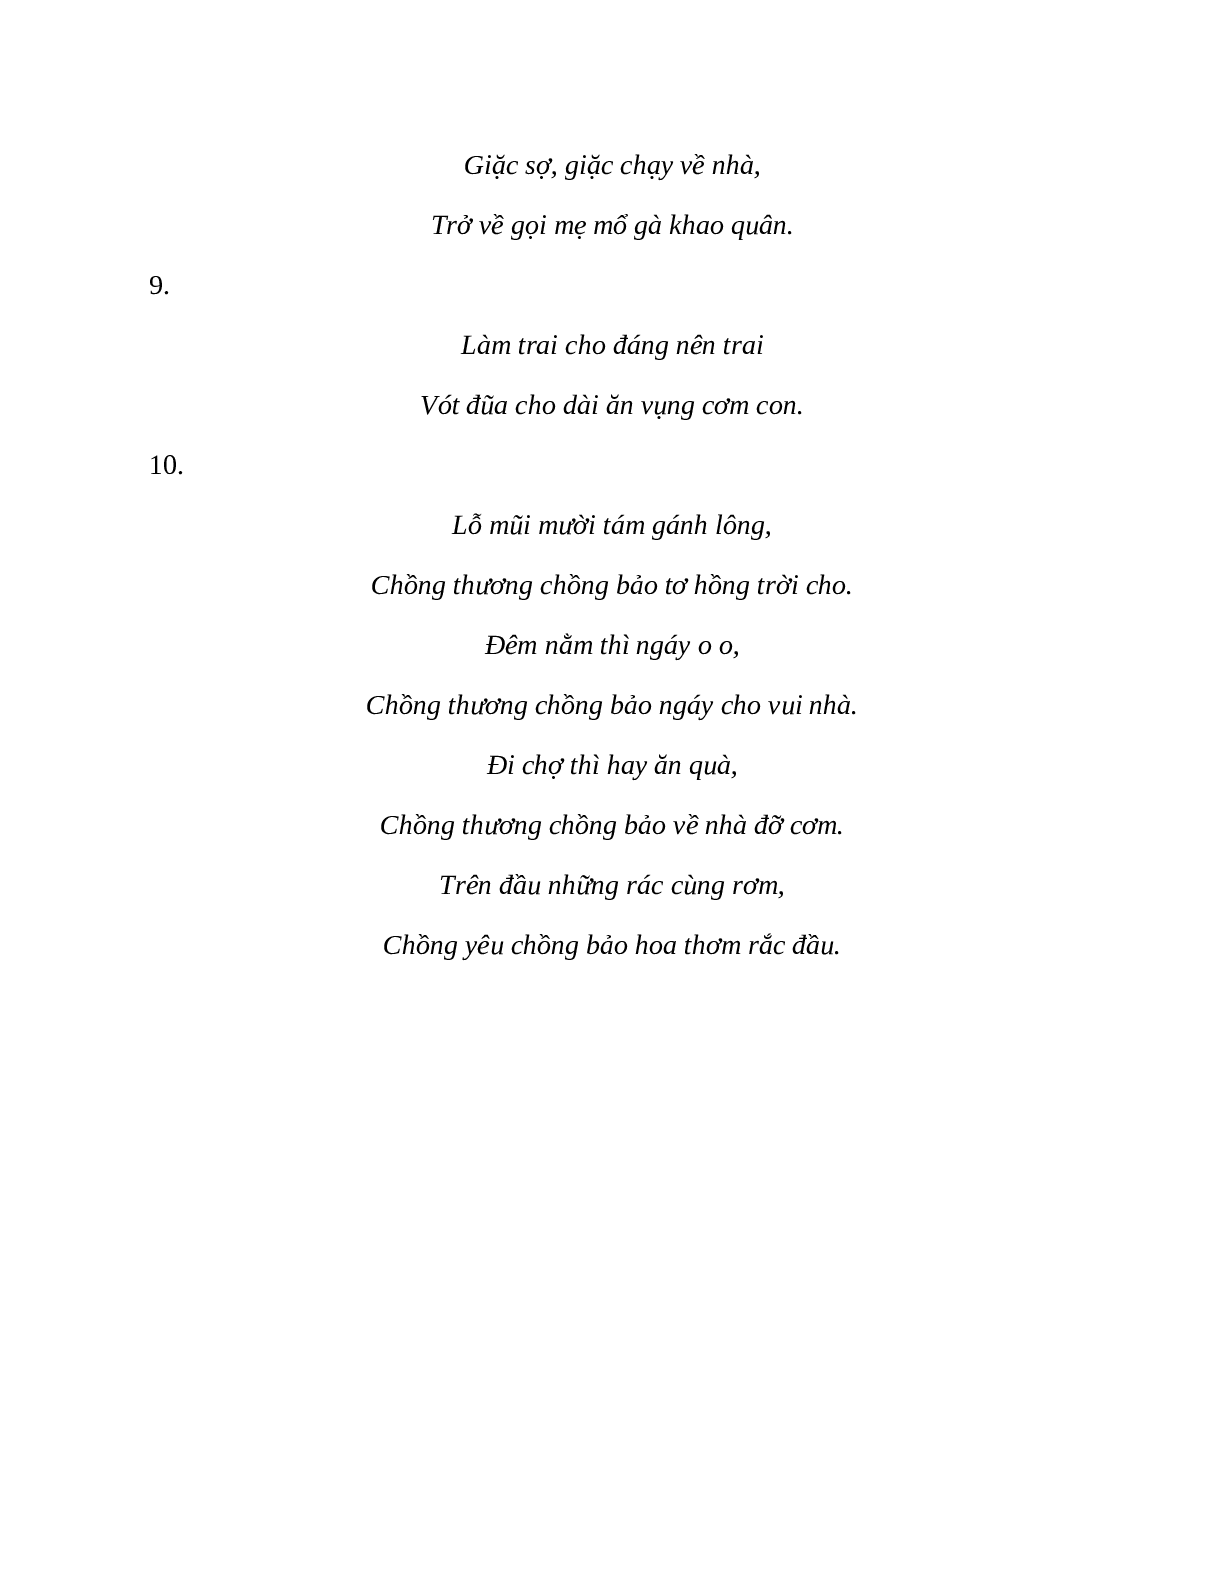 Sơ đồ tư duy bài Những câu hát châm biếm dễ nhớ, ngắn nhất - Ngữ văn lớp 7 (trang 10)